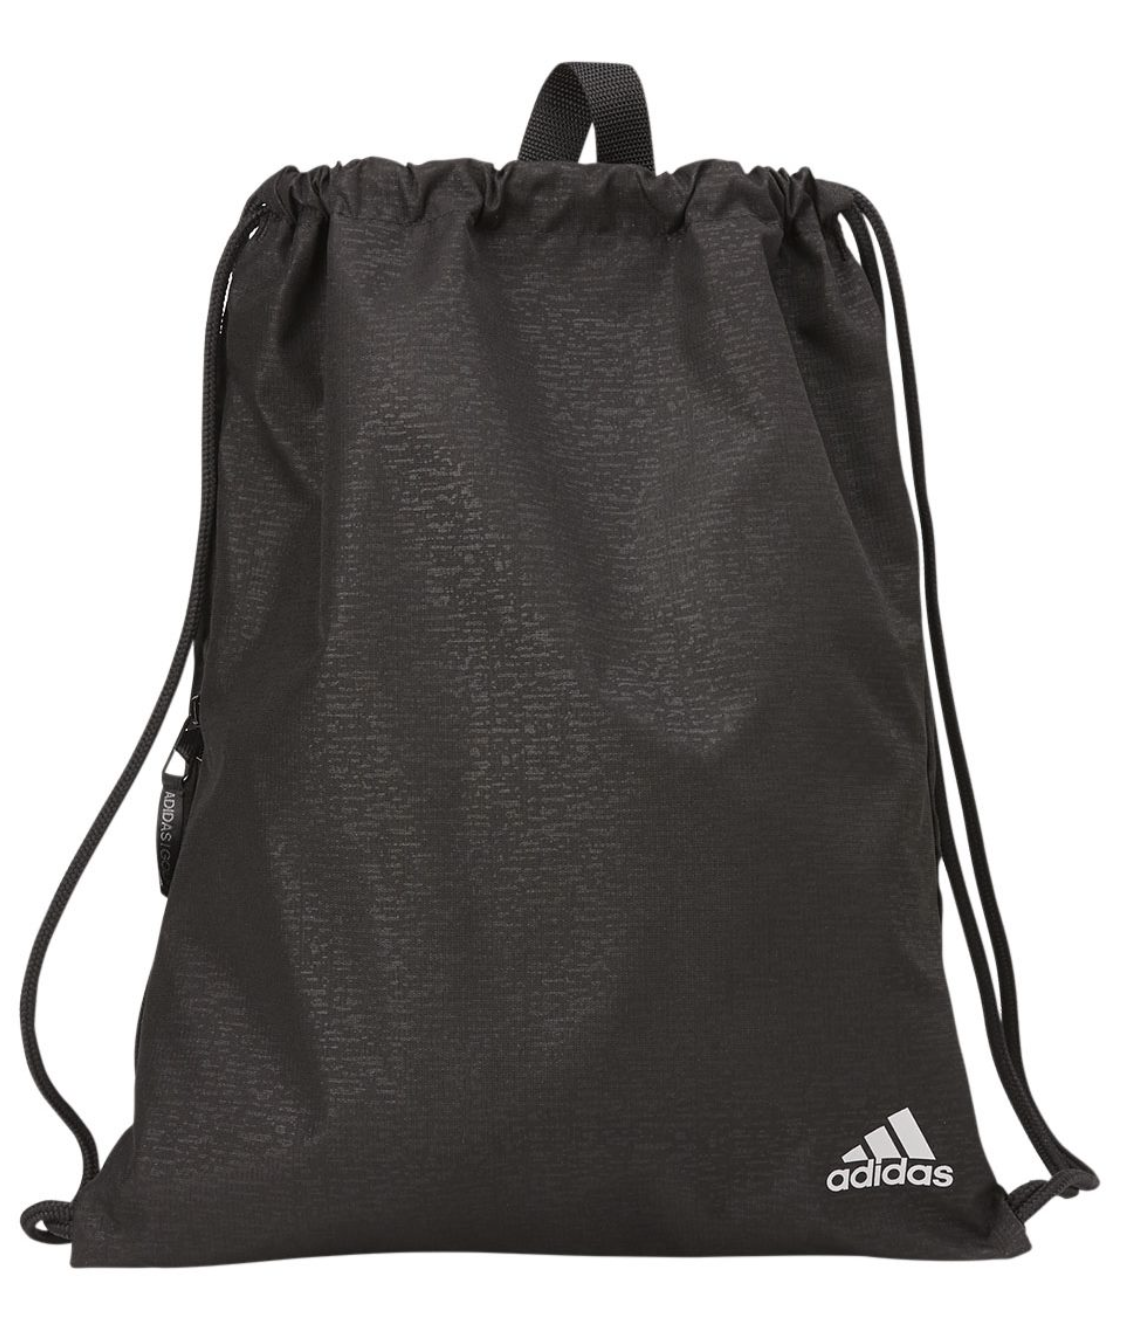 Adidas - Tonal Camo Gym Sack - A315